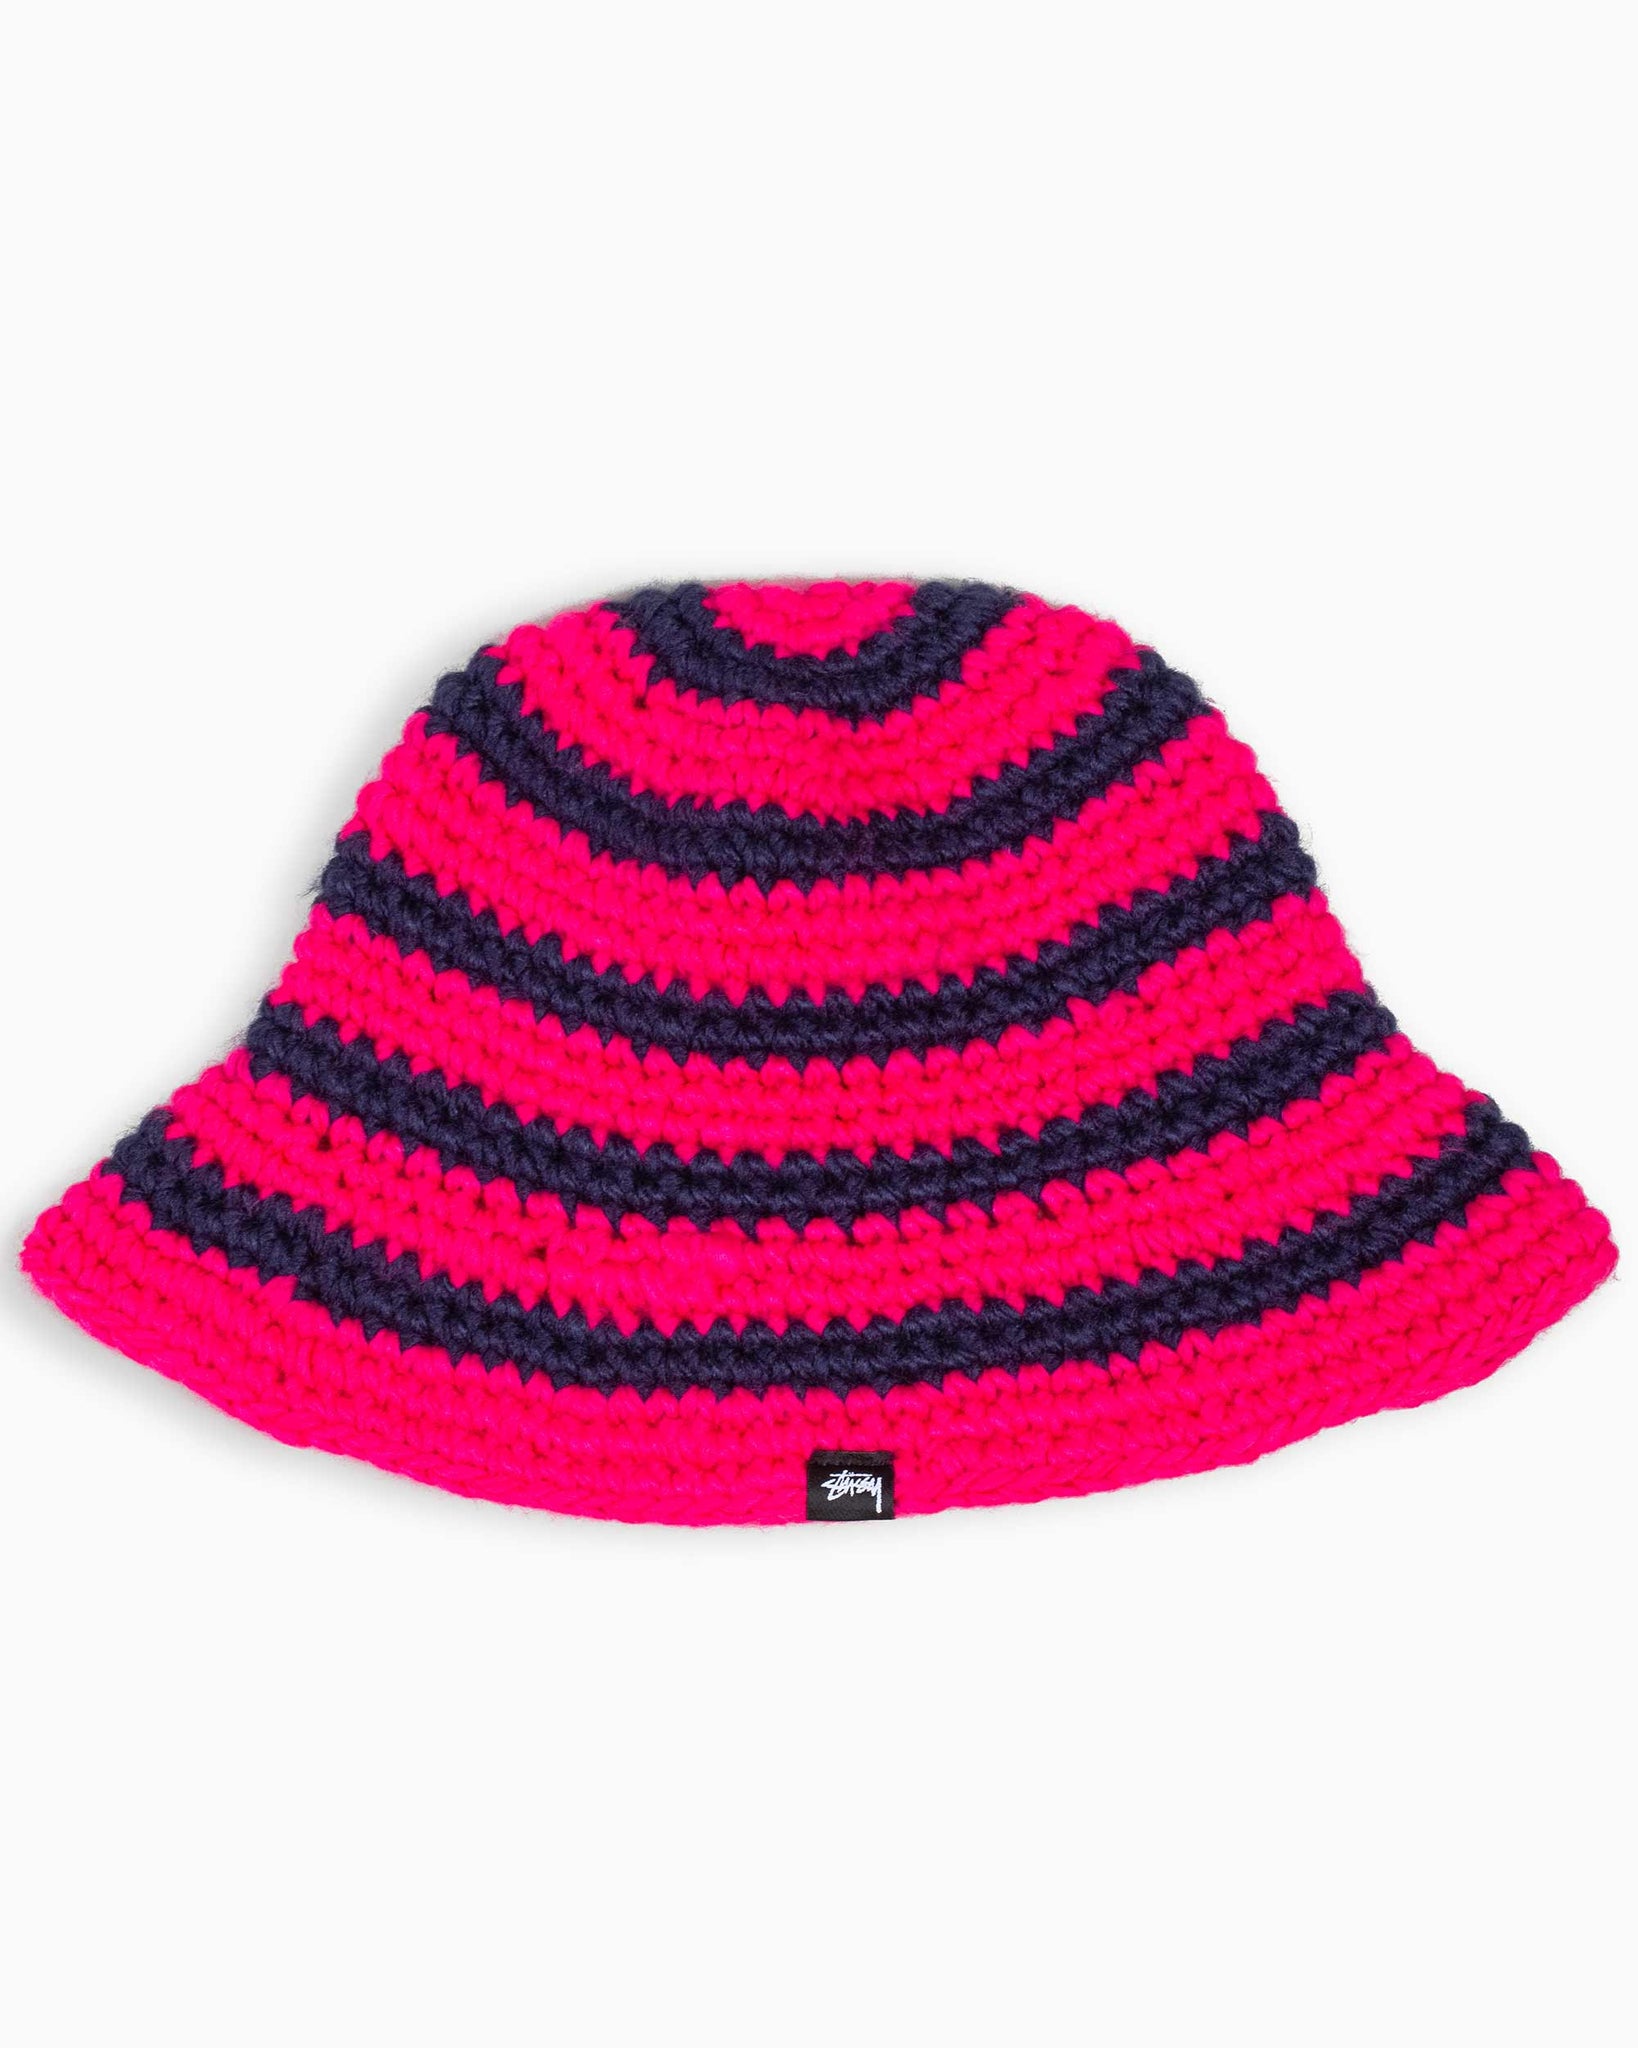 Stüssy Swirl Knit Bucket Hat Hot Pink